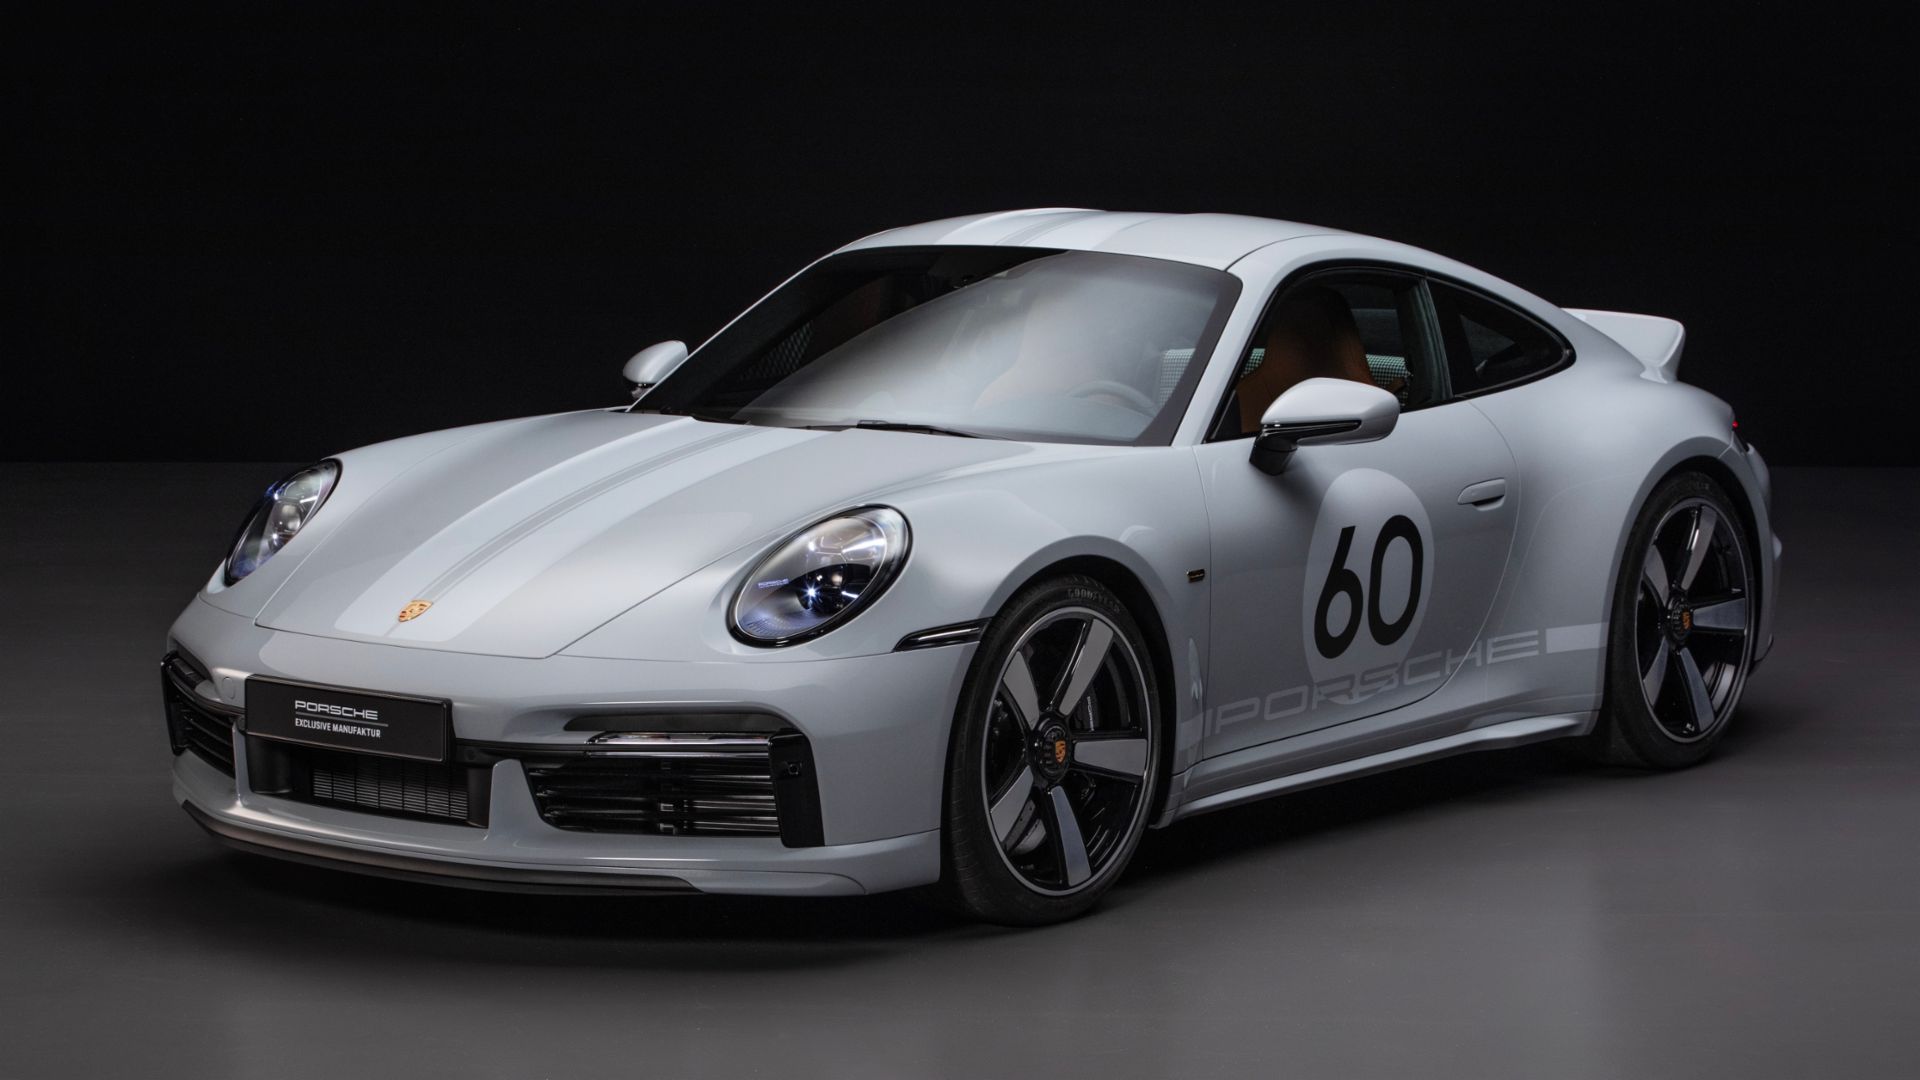 Porsche Dealer Marks Up 911 Sport Classic to $540,000